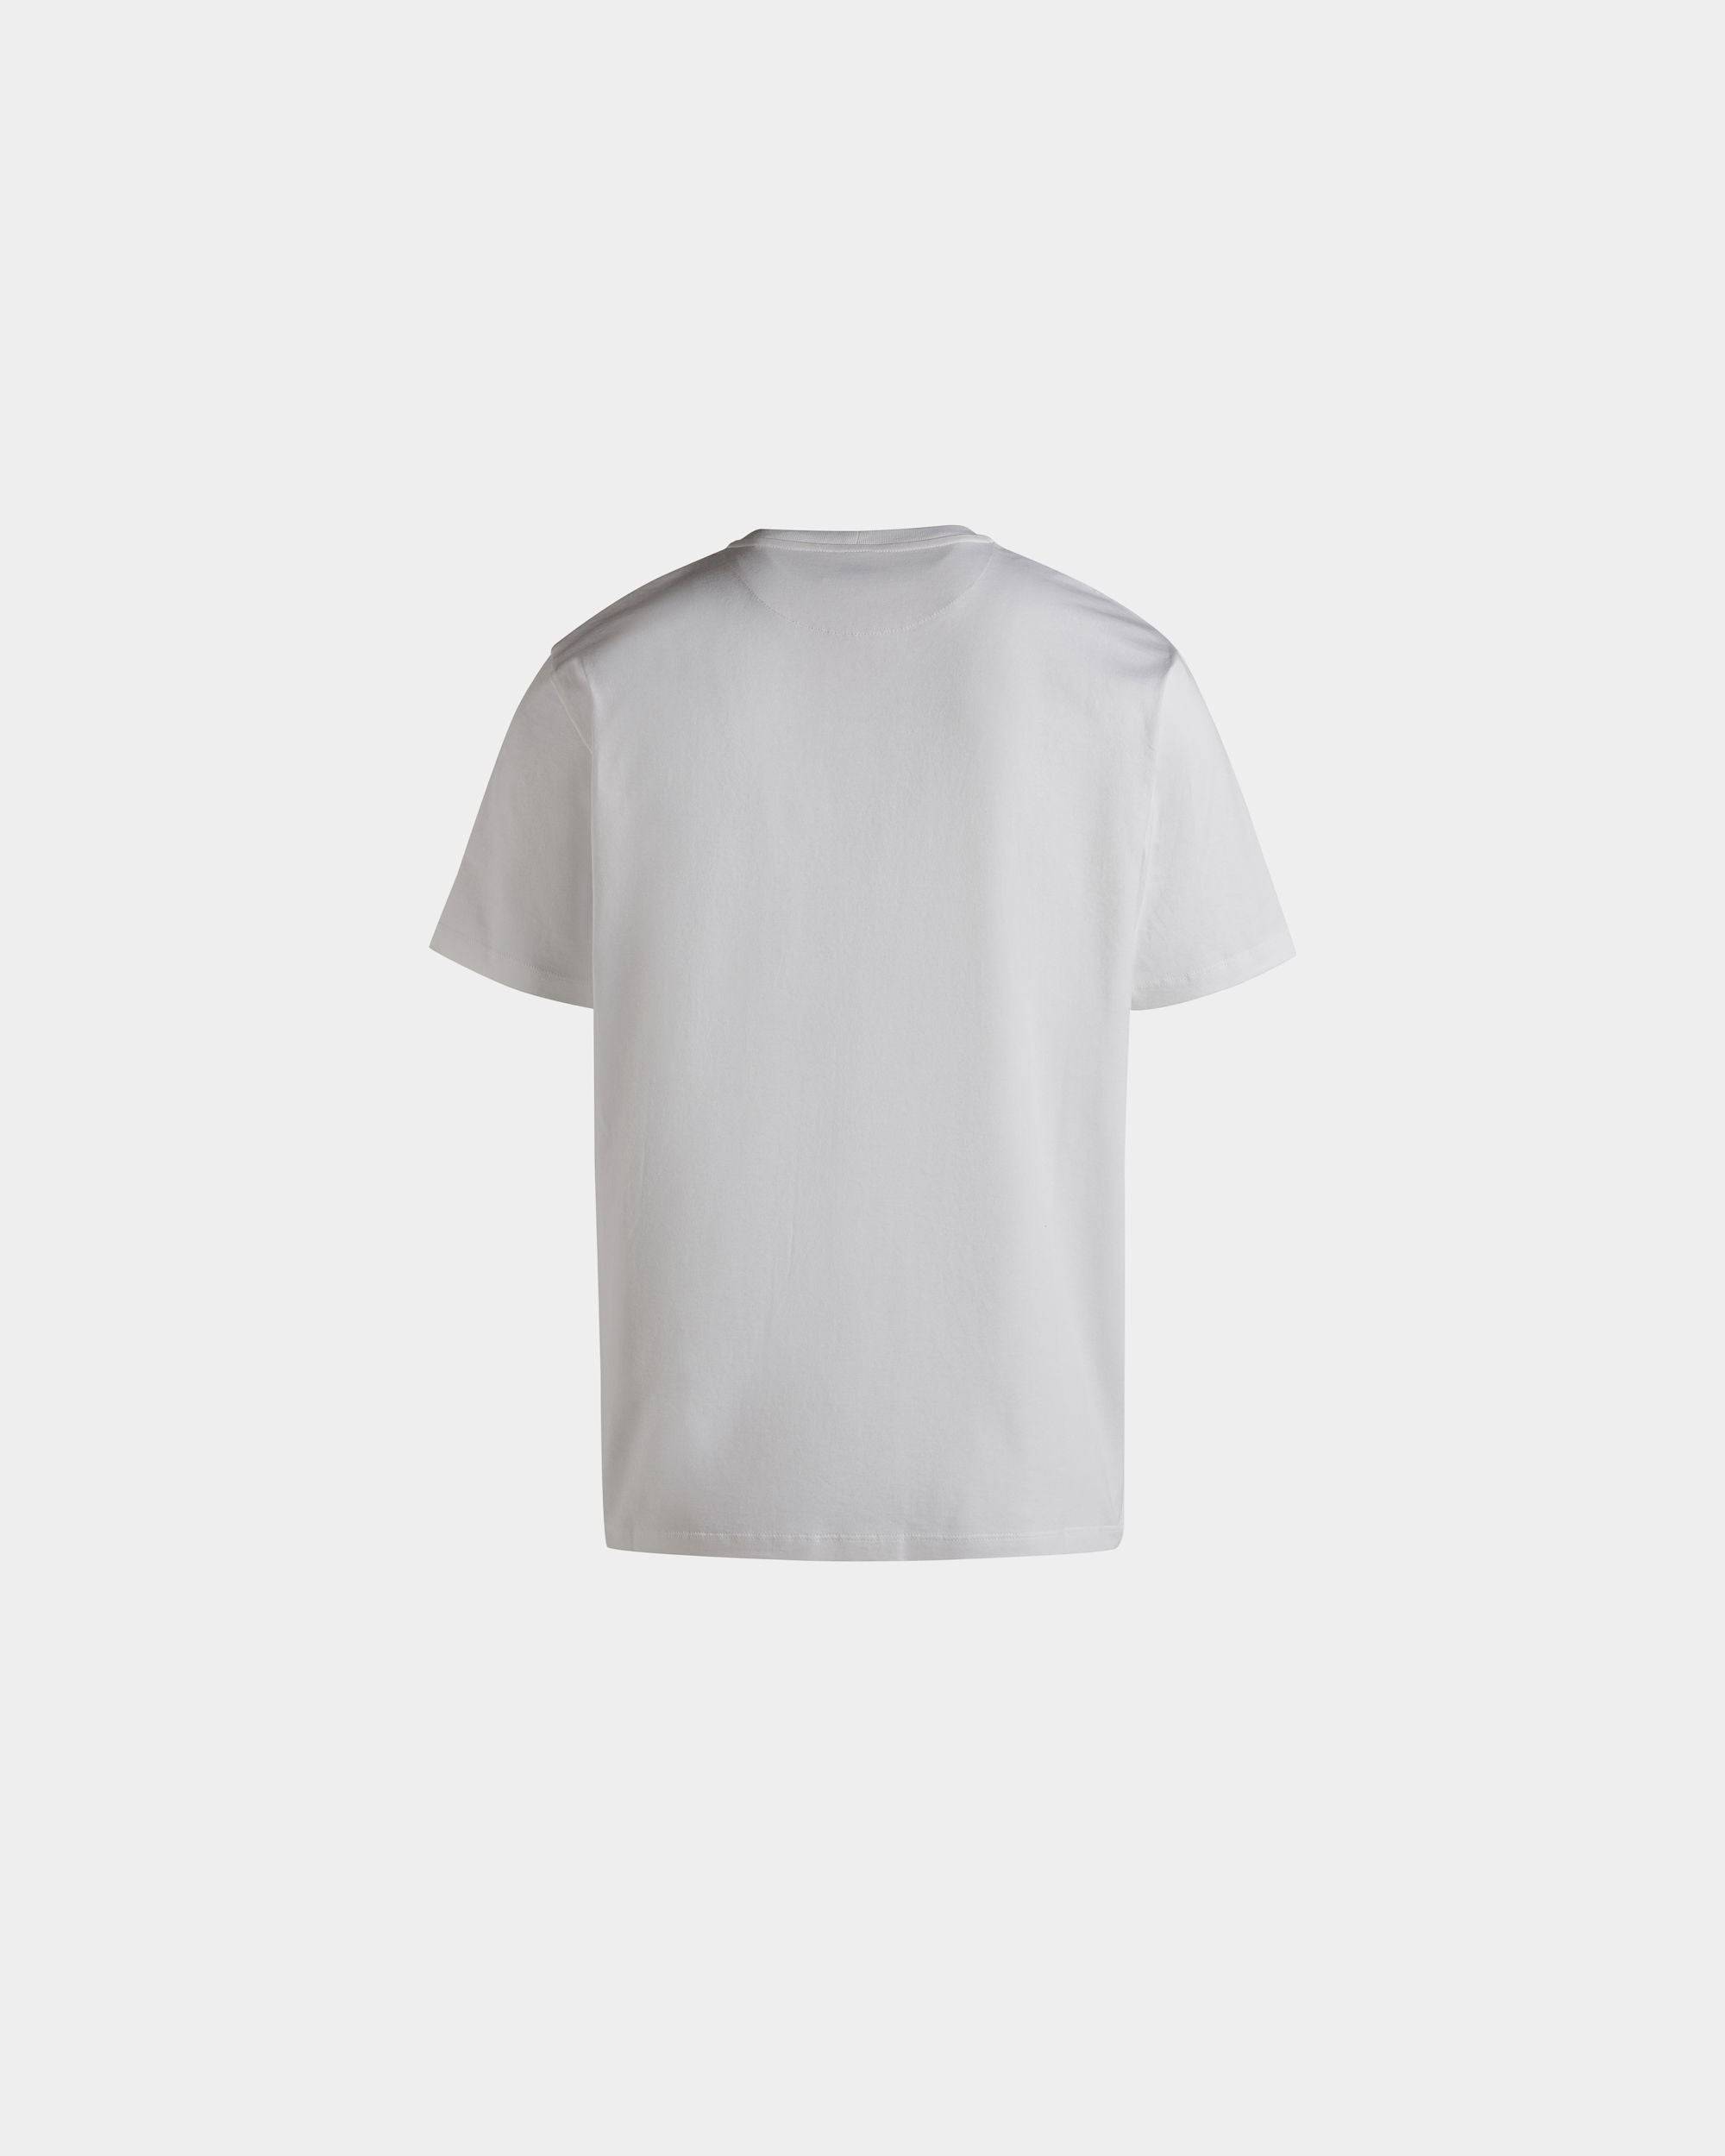 Men's T-Shirt in White Cotton | Bally | Still Life Back